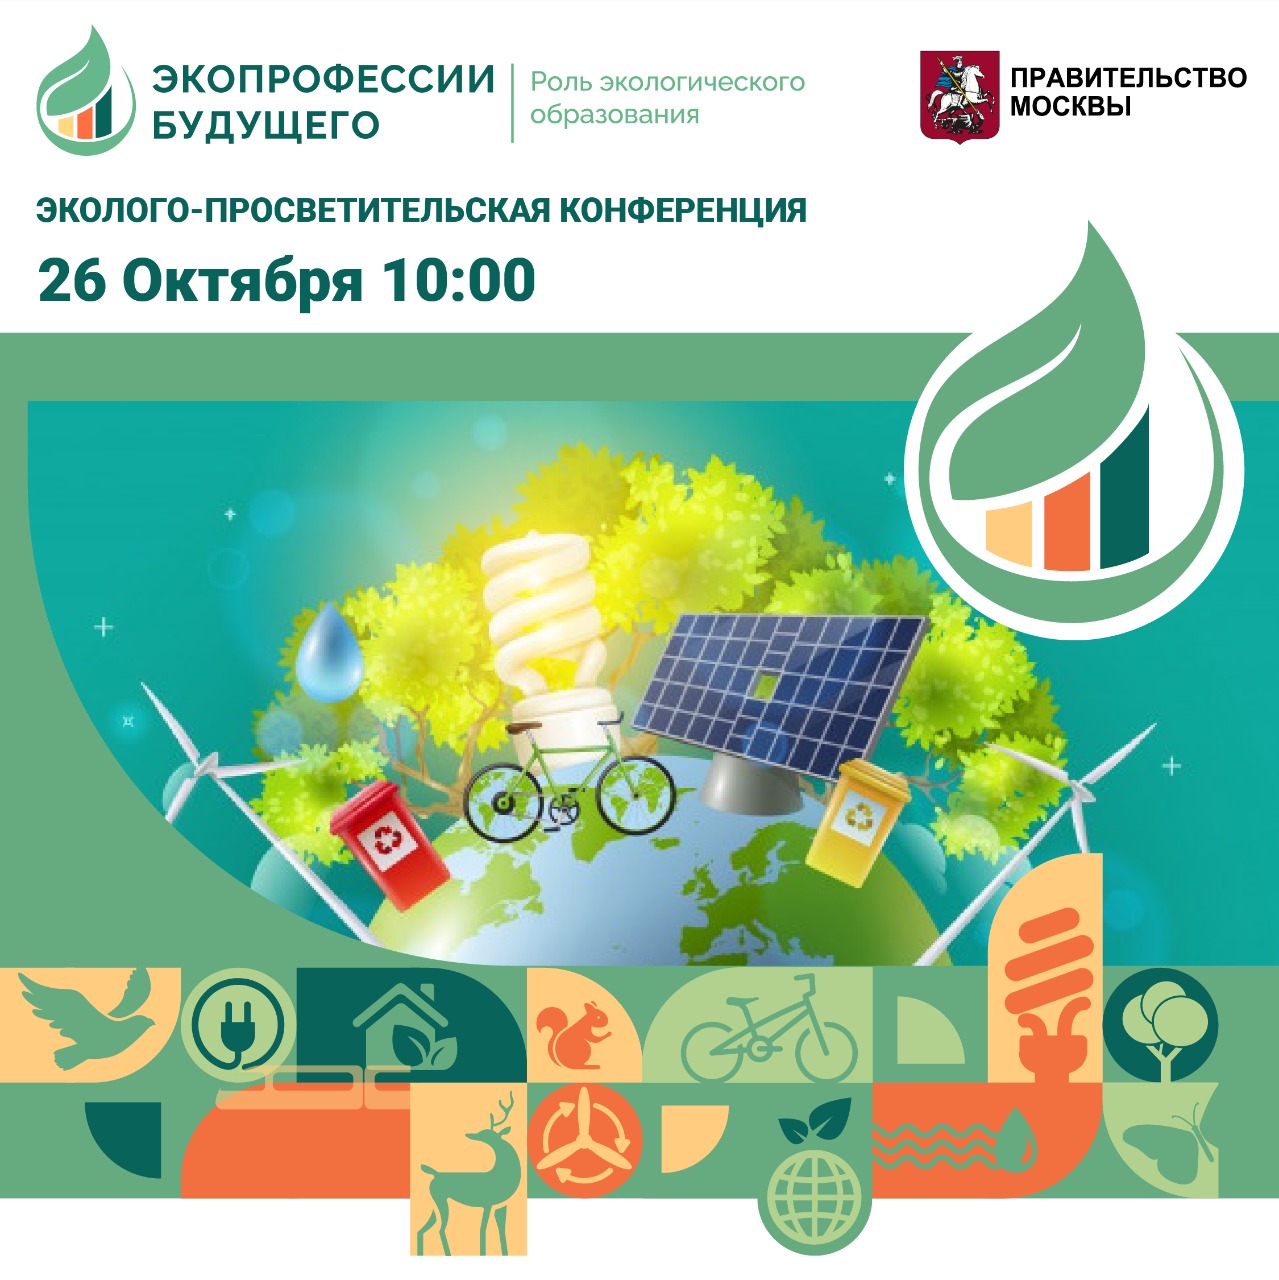 В Москве пройдет конференция по экопрофессиям будущего - фото 1